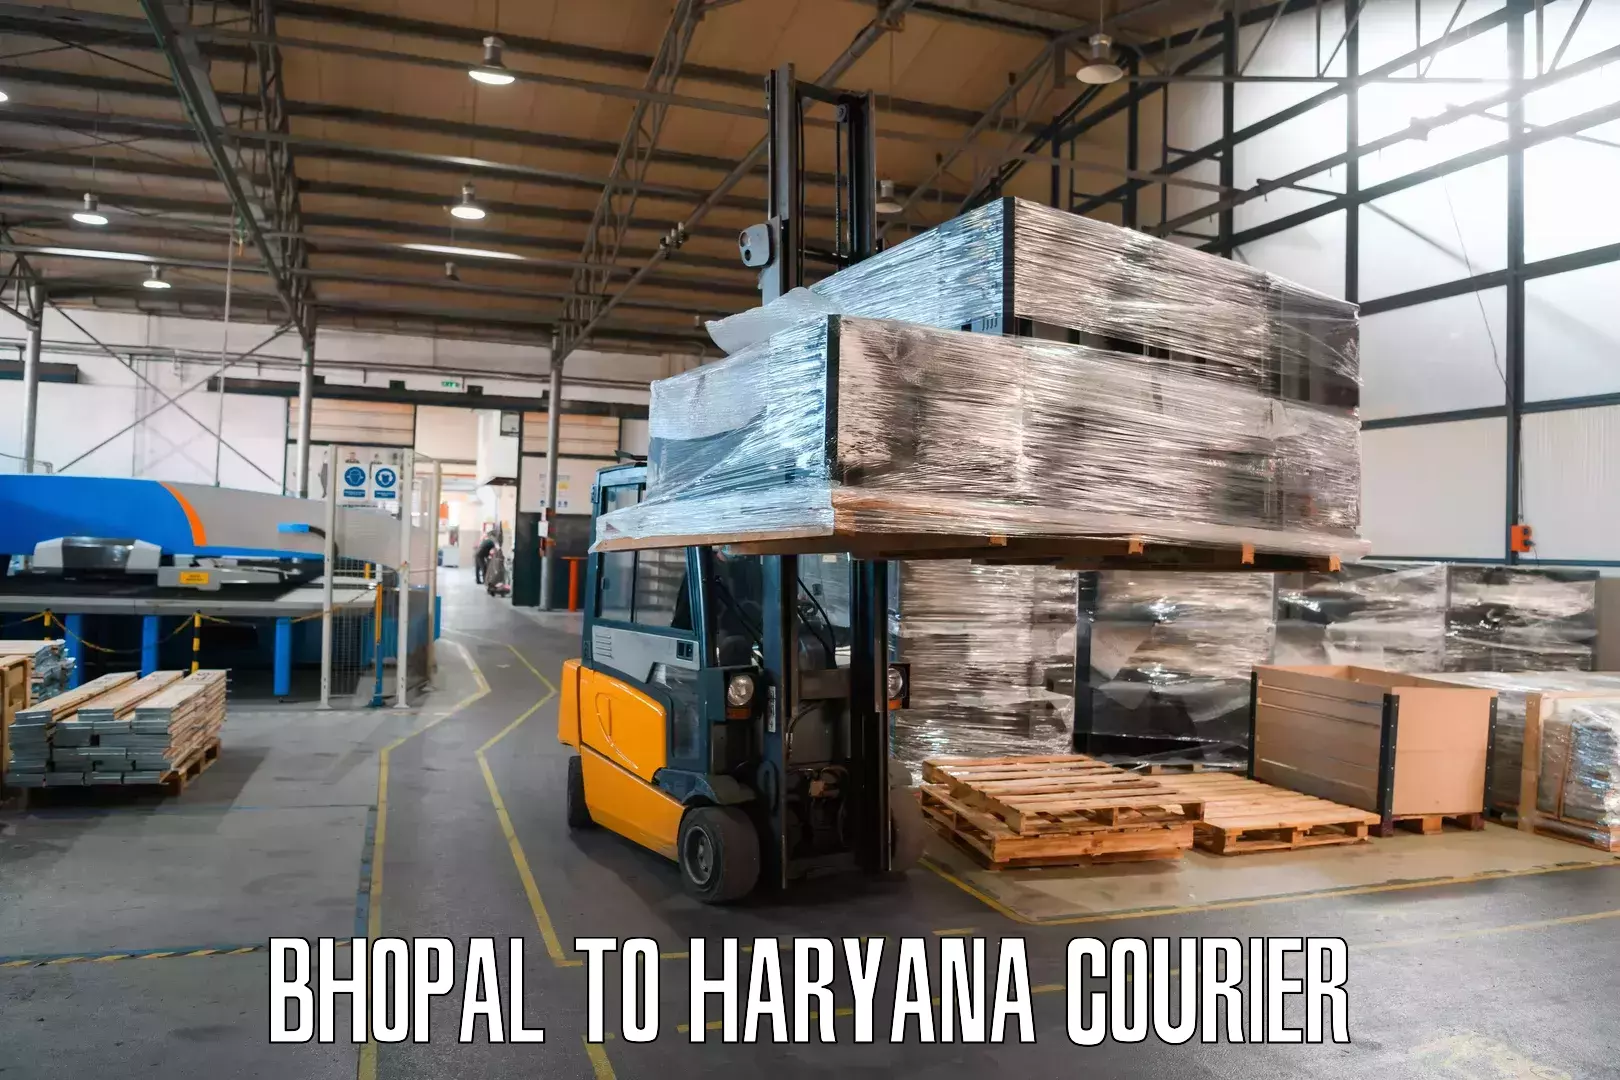 Global logistics network Bhopal to Narwana